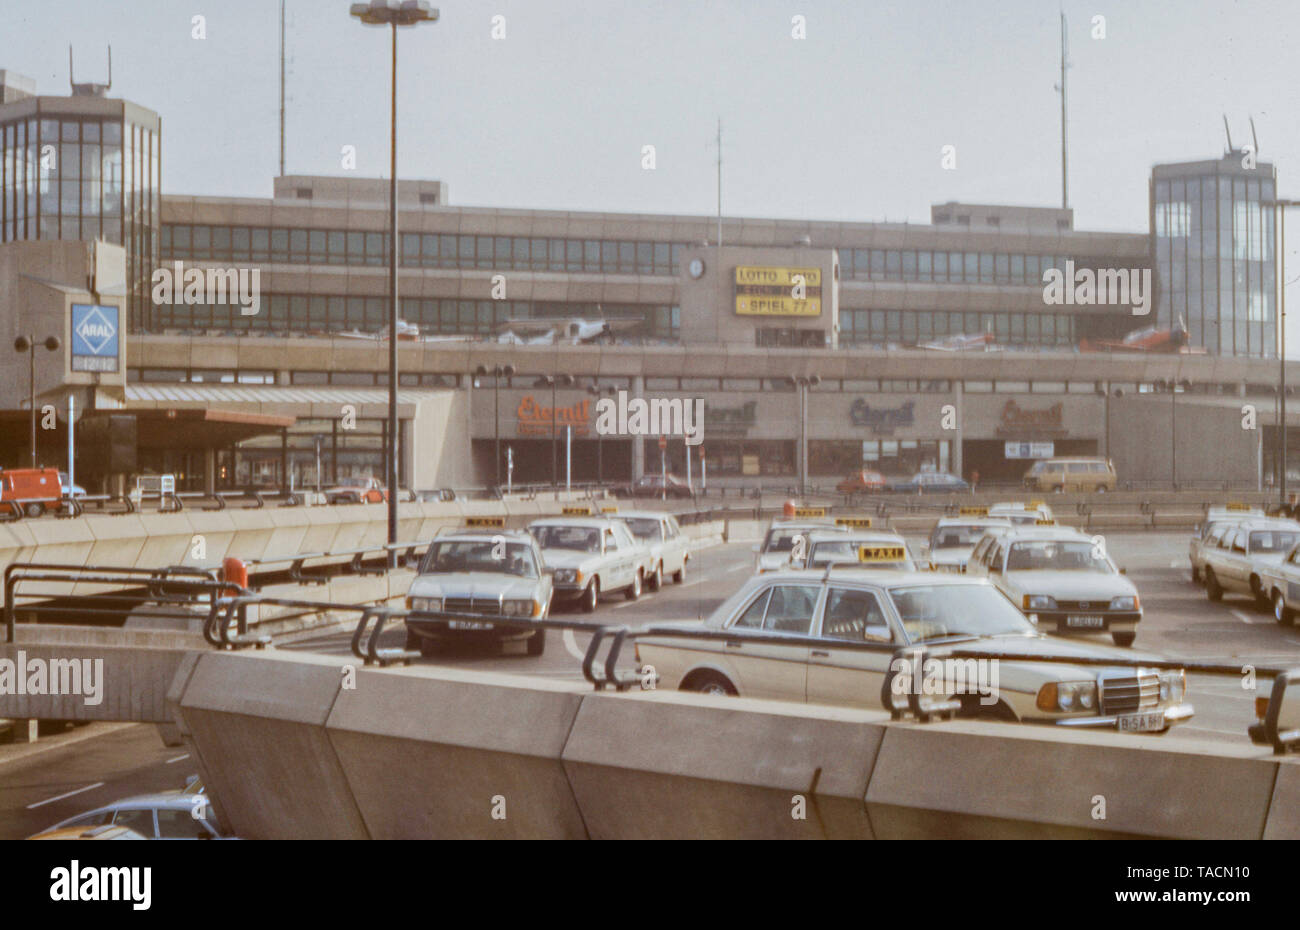 Taxis vor dem Terminalgebäude des Flughafens Tegel TXL während der 80er Jahre (Ca. 1984), Berlin, Deutschland, Europa - Archiv Bild Stockfoto